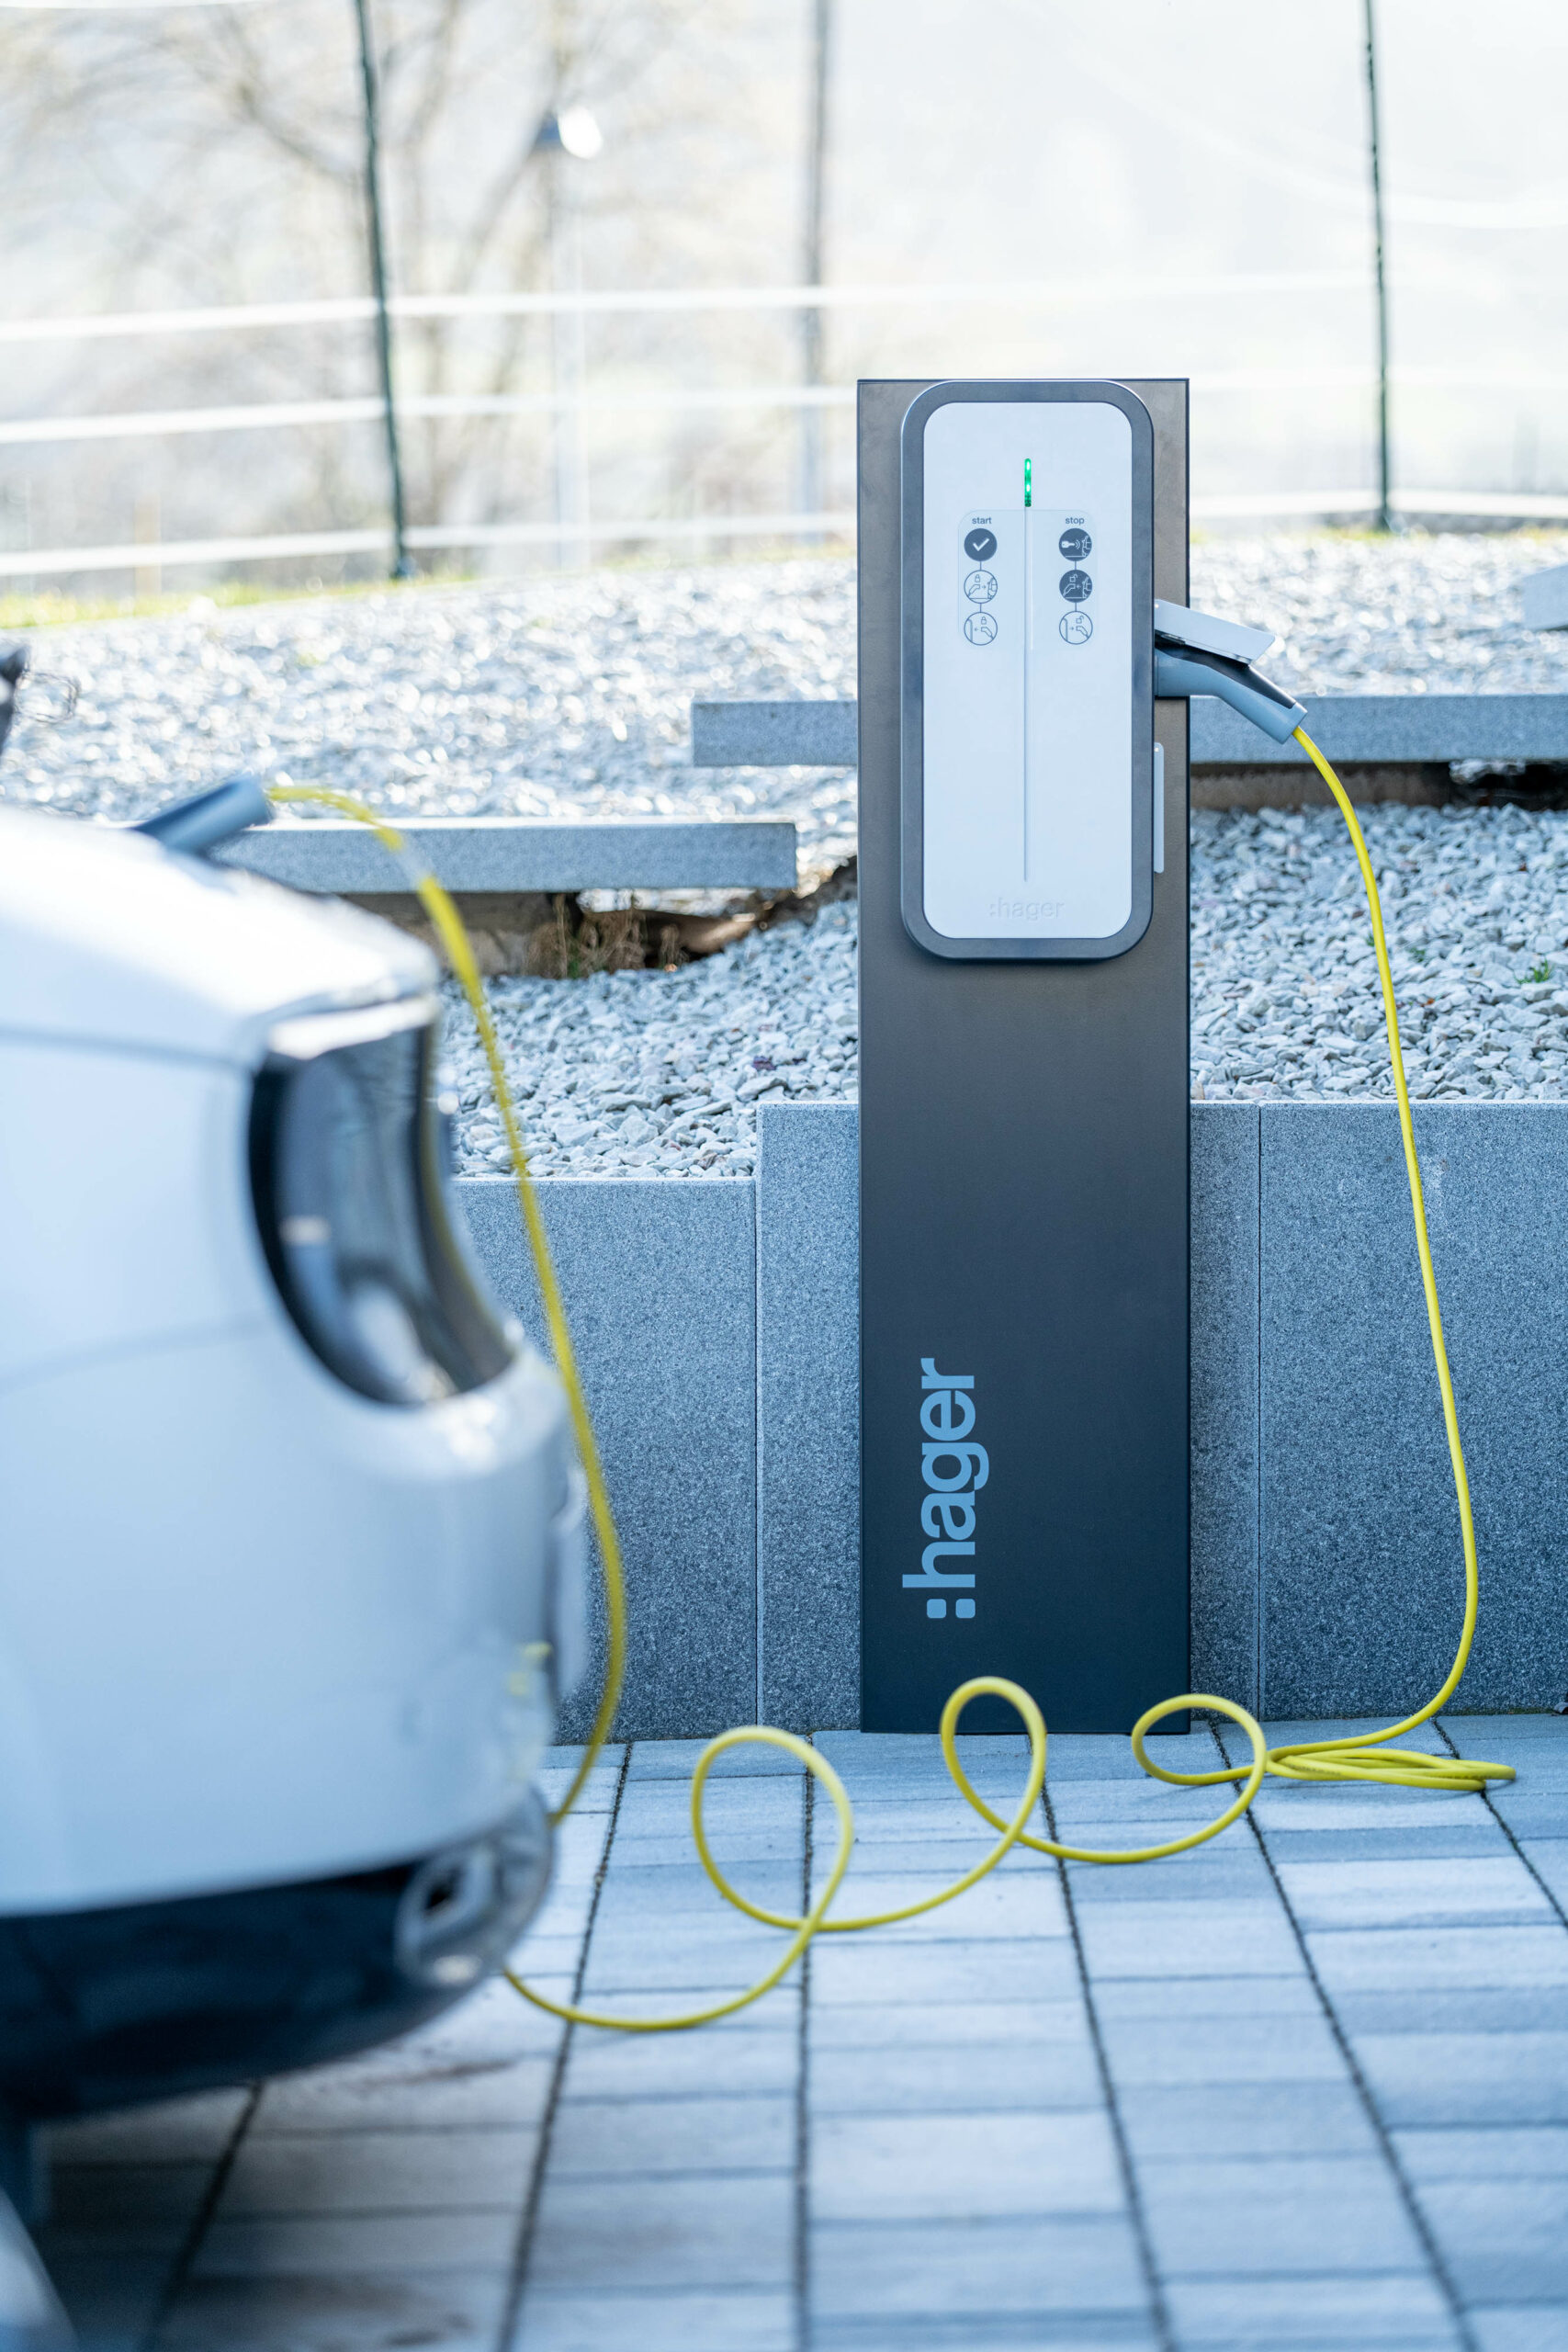 Borne de recharge véhicule électrique SF ELEC FLEUREY SUR OUCHE Tel 06.01.00.66.19 Mail : contact@sf-elec.fr